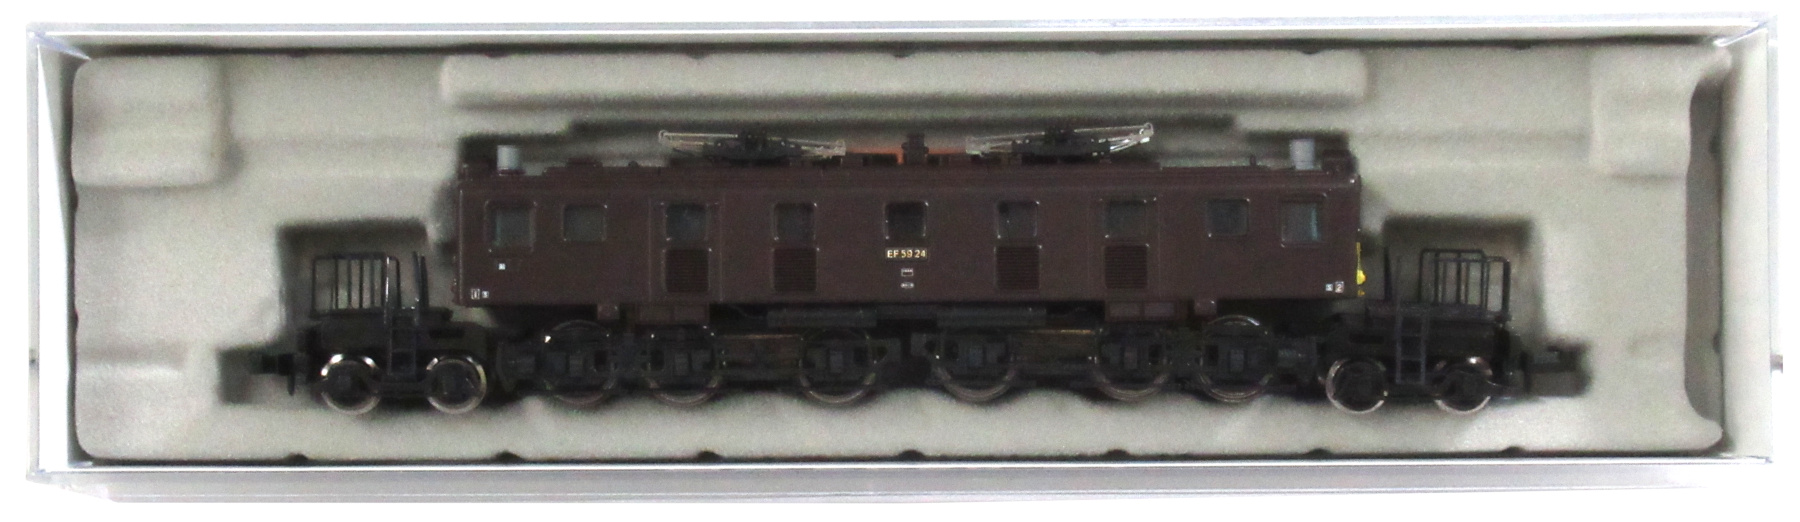 A1804 国鉄EF59-24